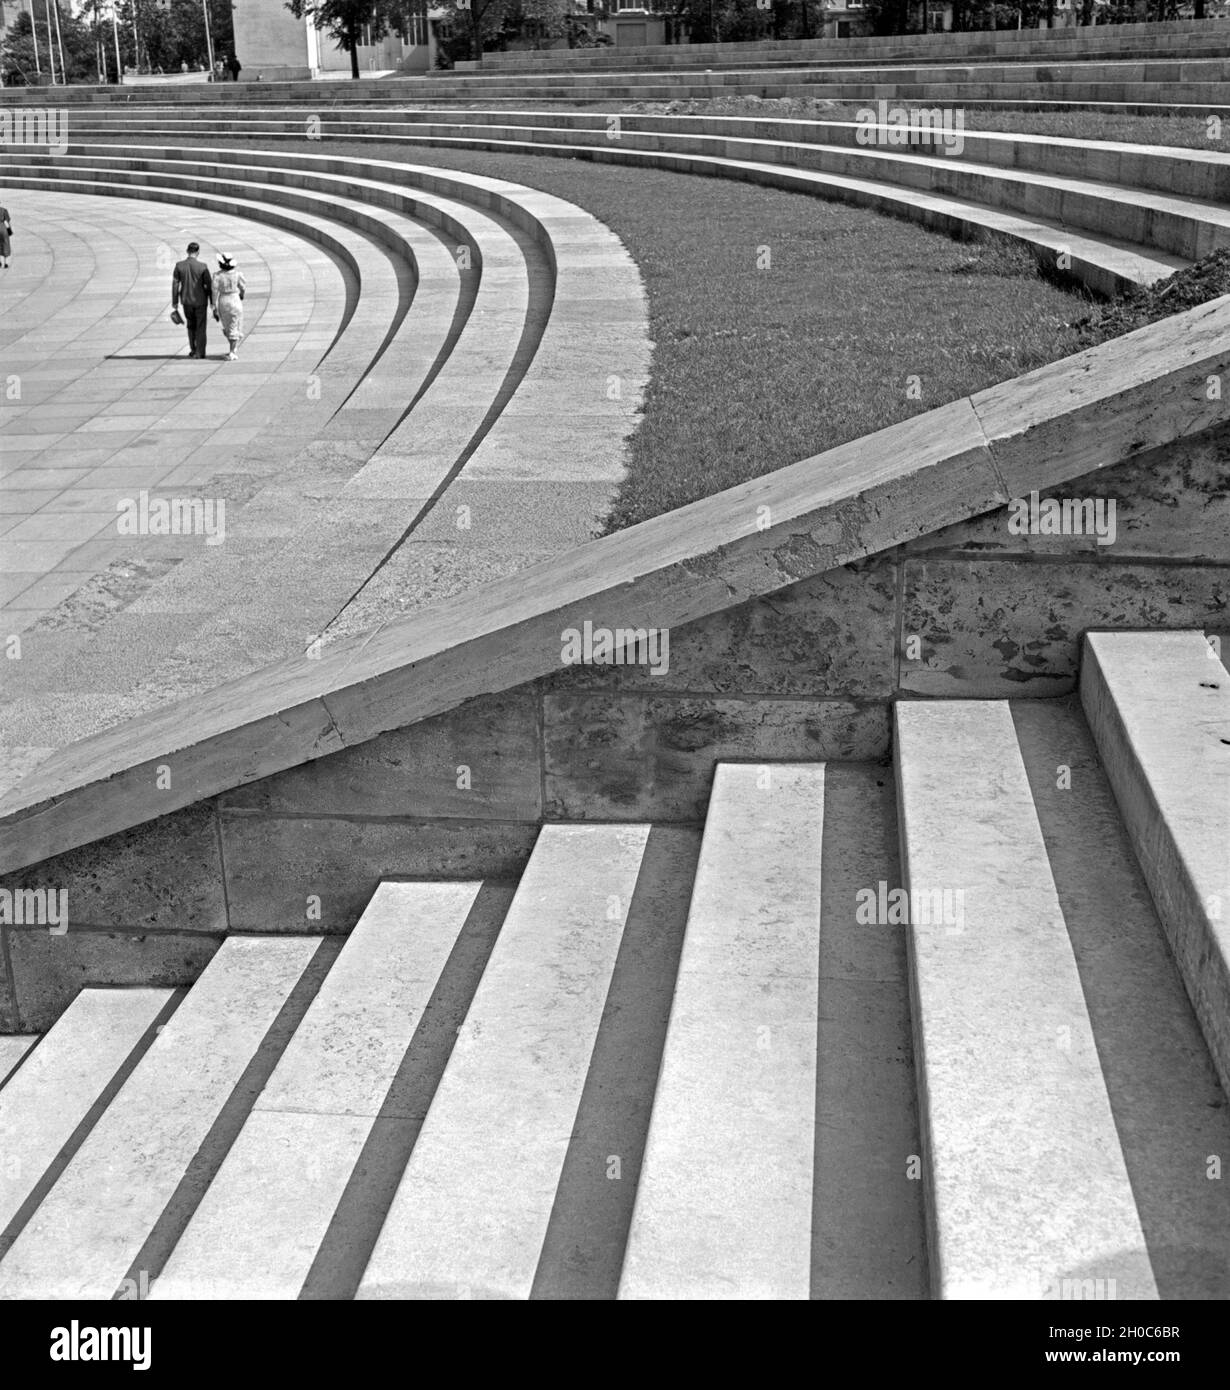 Ein Paar spaziert Vor den Rängen des Reichsparteitagsgeländes in Norimberga, Deutschland 1930er Jahre. Un giovane strollin presso le sedi della Reichsparteitagsgelände a Norimberga, Germania 1930s. Foto Stock